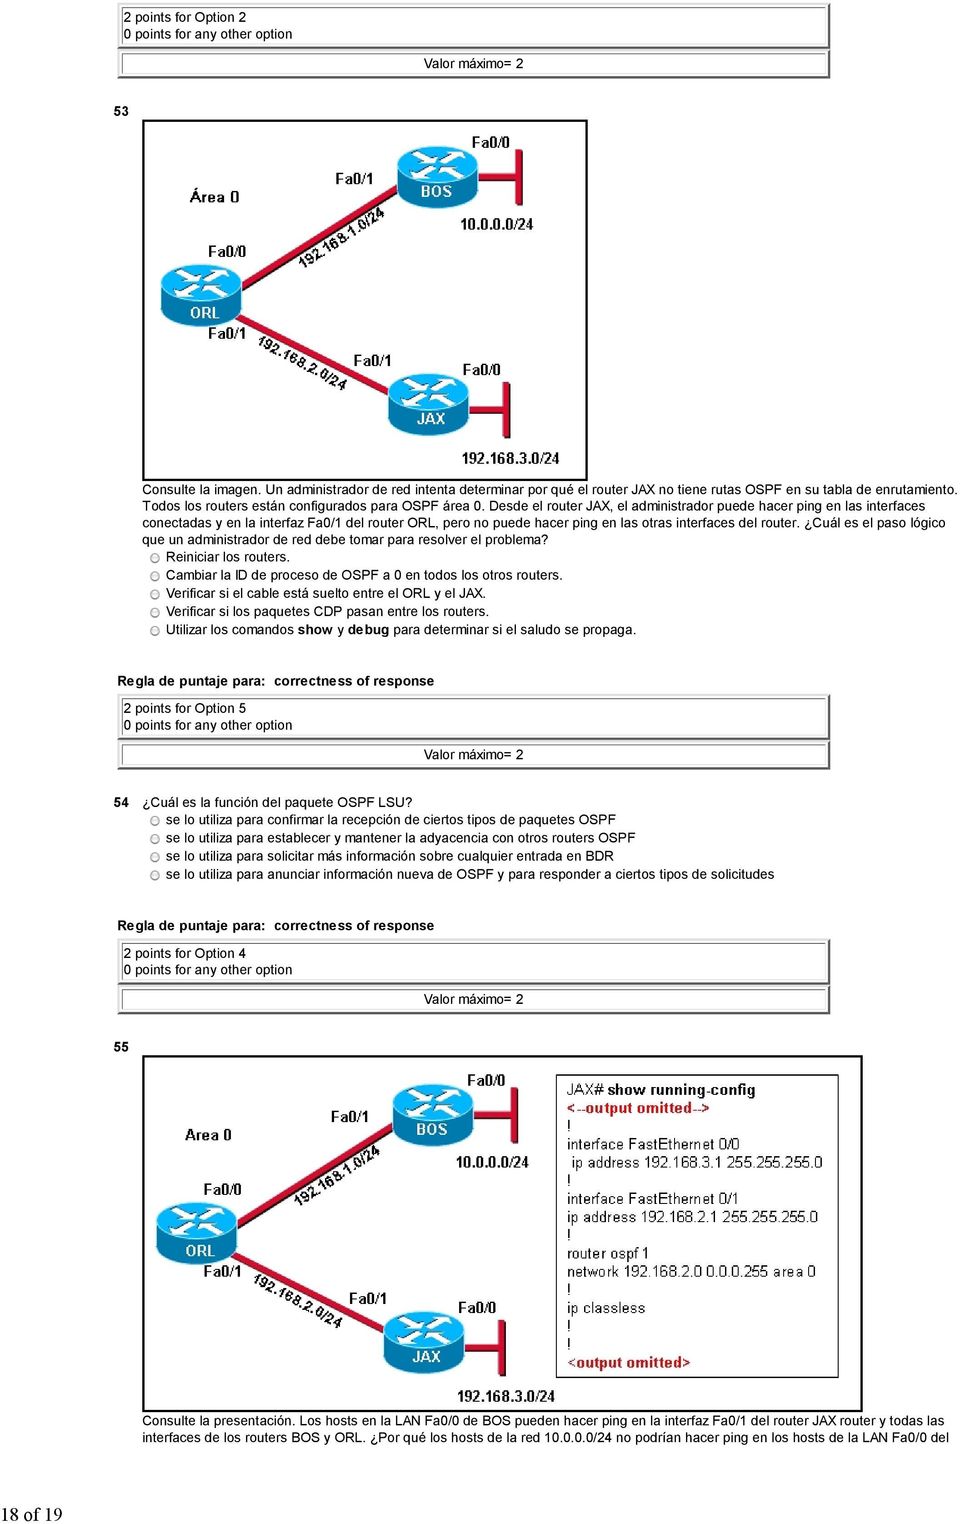 Desde el router JAX, el administrador puede hacer ping en las interfaces conectadas y en la interfaz Fa0/1 del router ORL, pero no puede hacer ping en las otras interfaces del router.